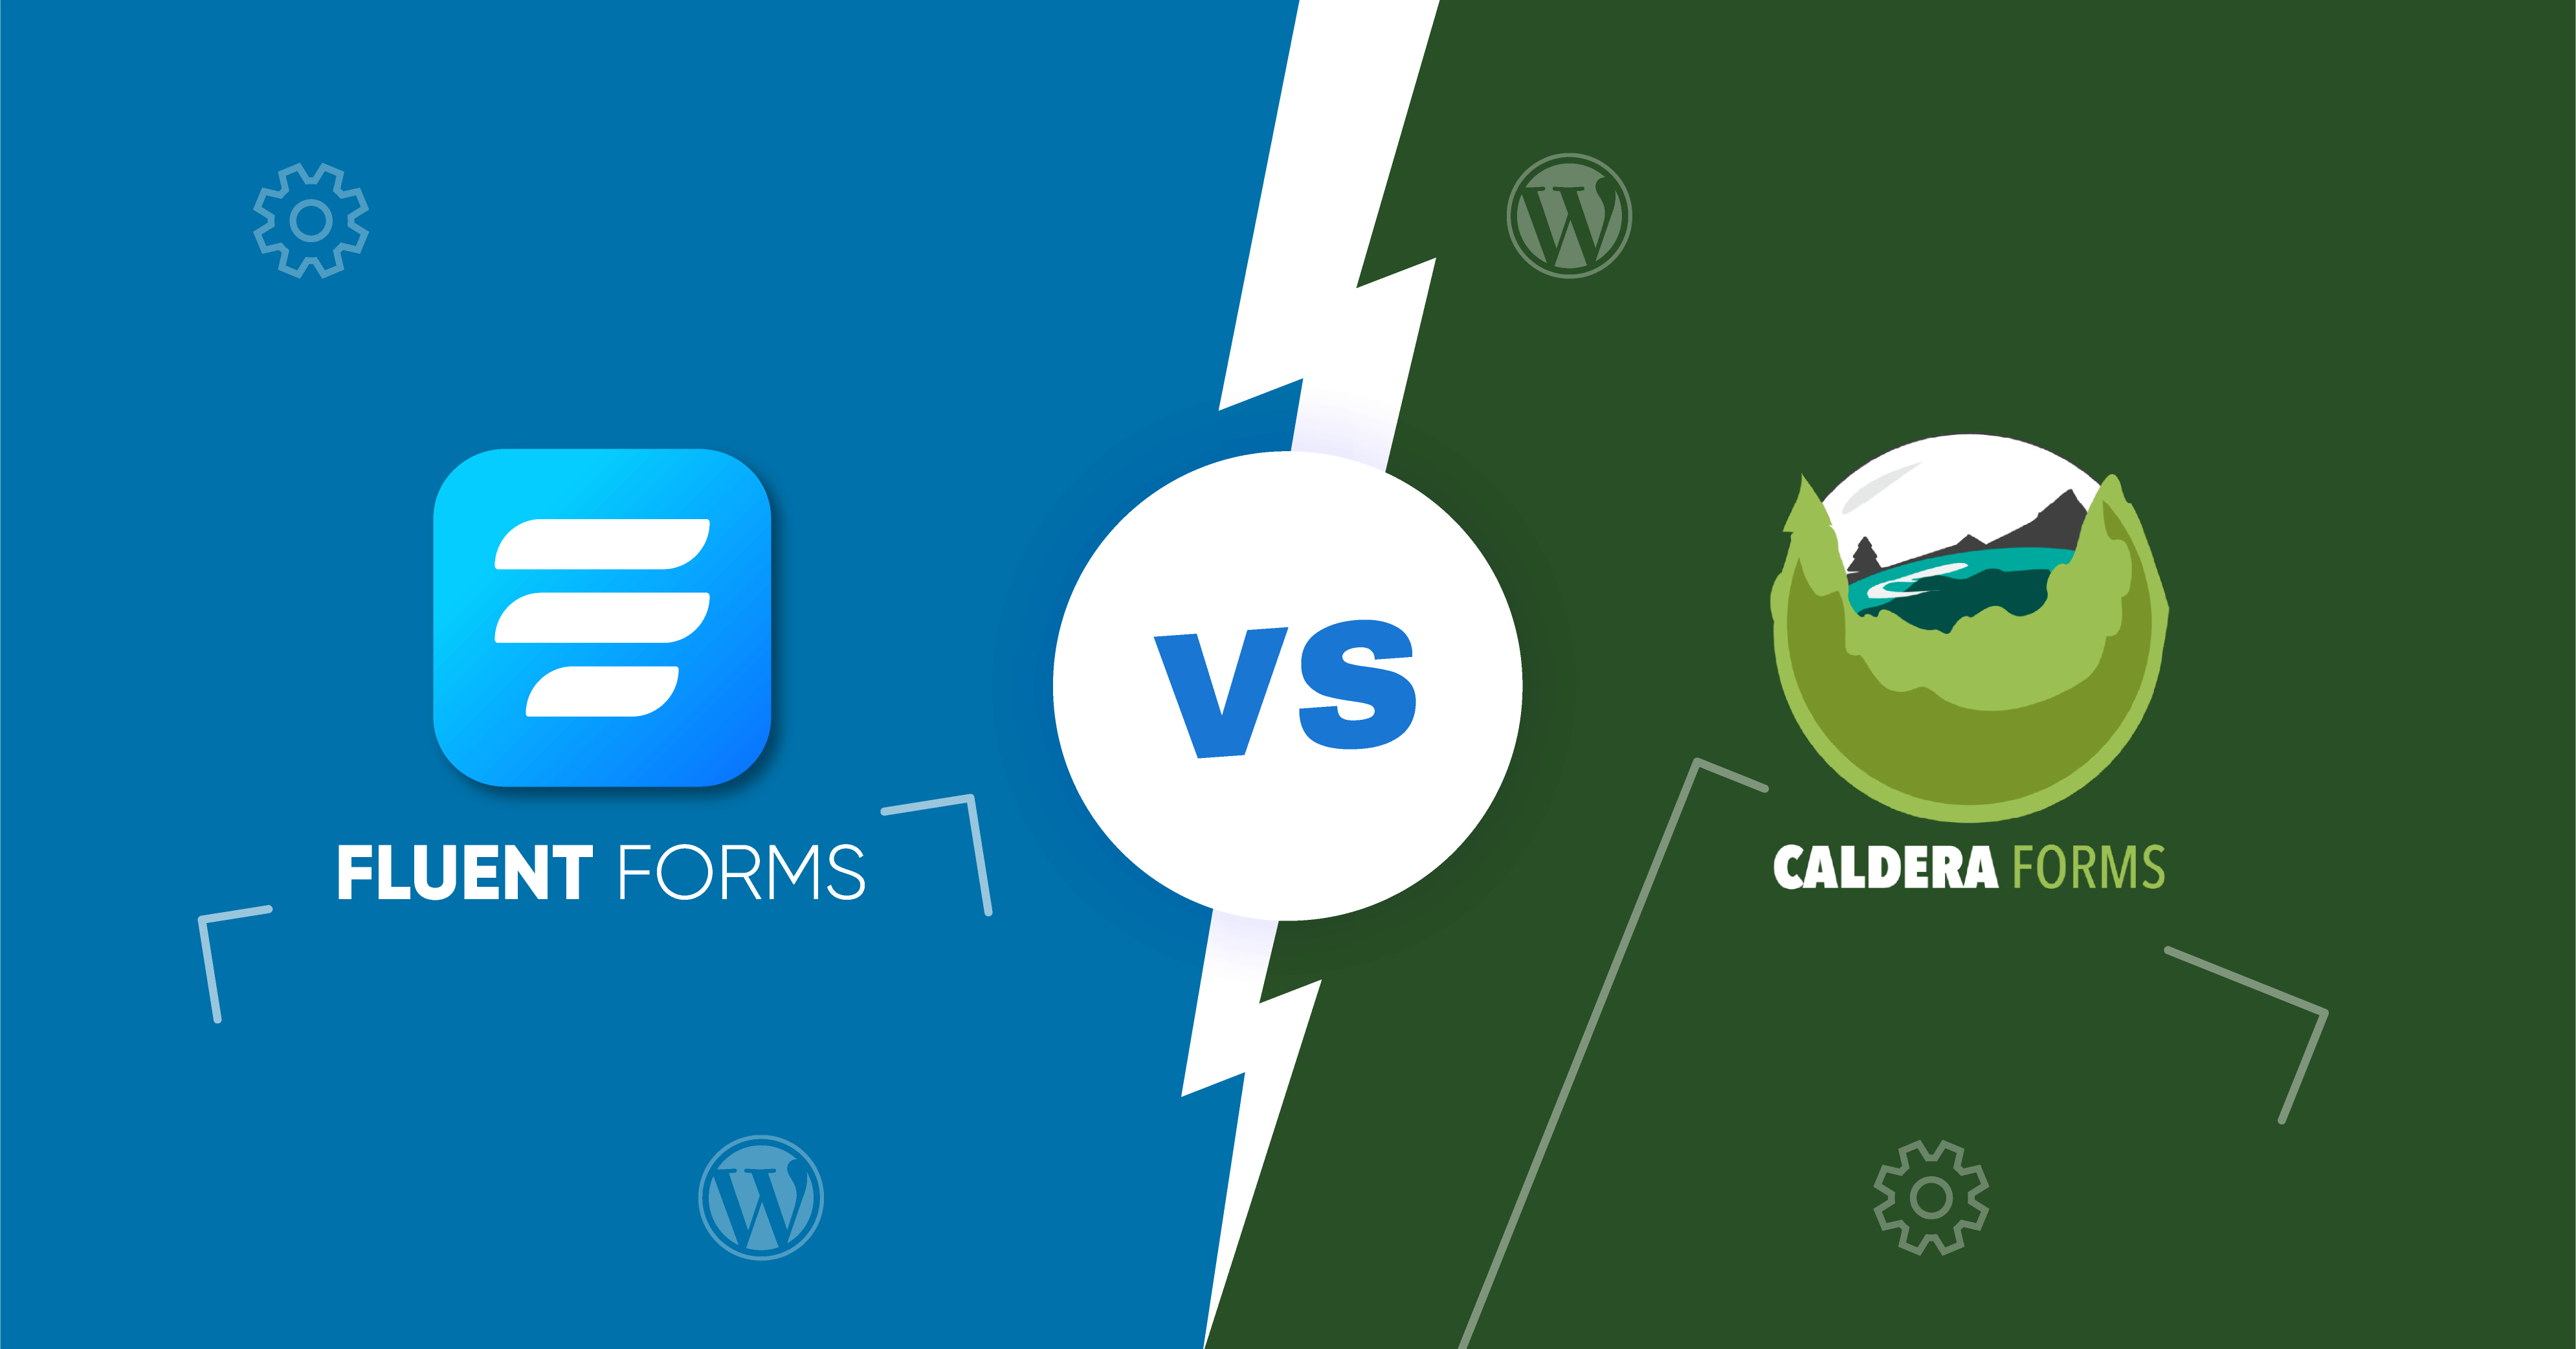 Caldera Forms vs Fluent Forms